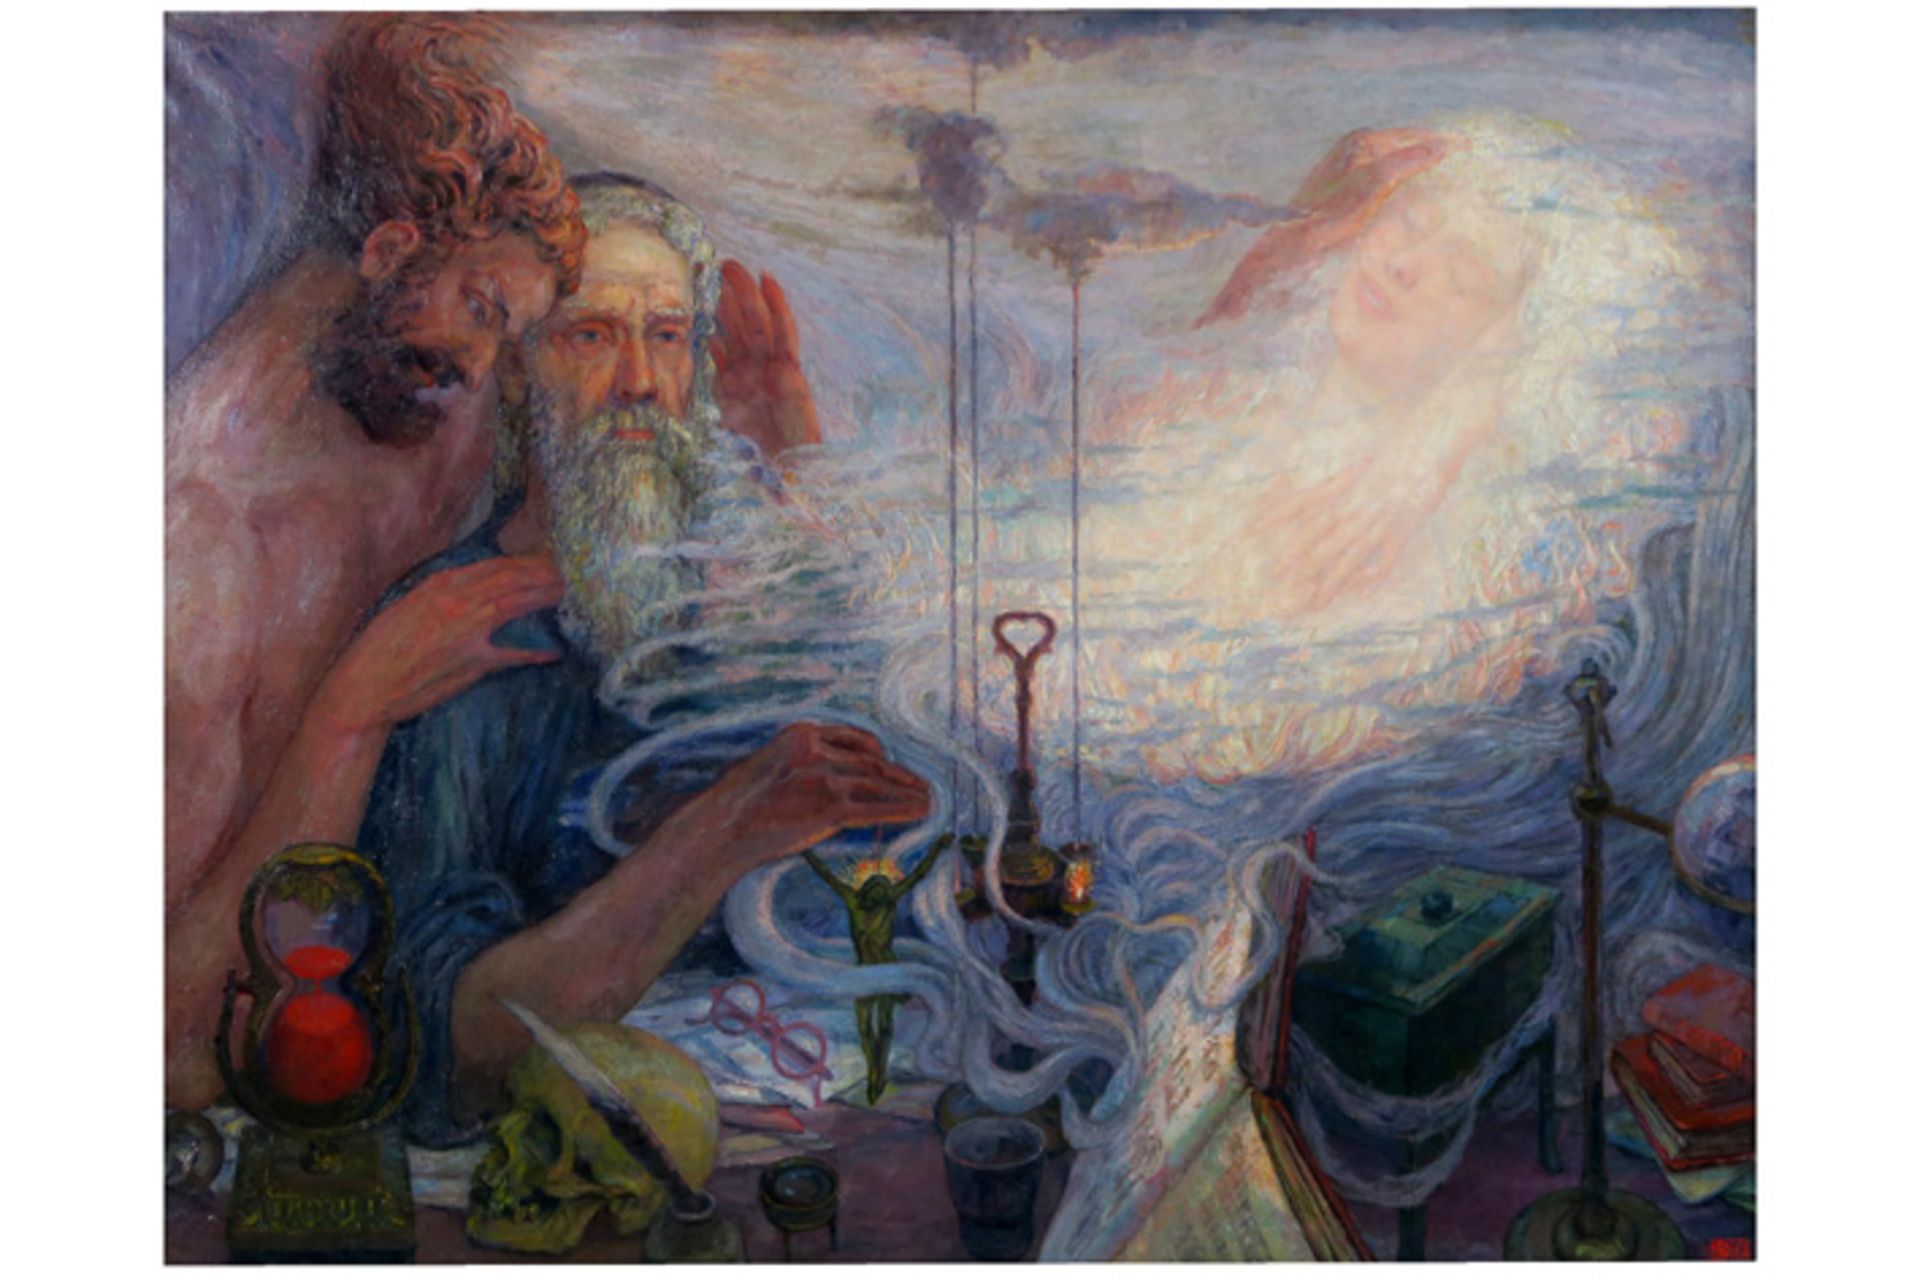 PYCKE FRANÇOIS (1890 - 1960) olieverfschilderij op doek met een vrij surreëel en symbolistisch